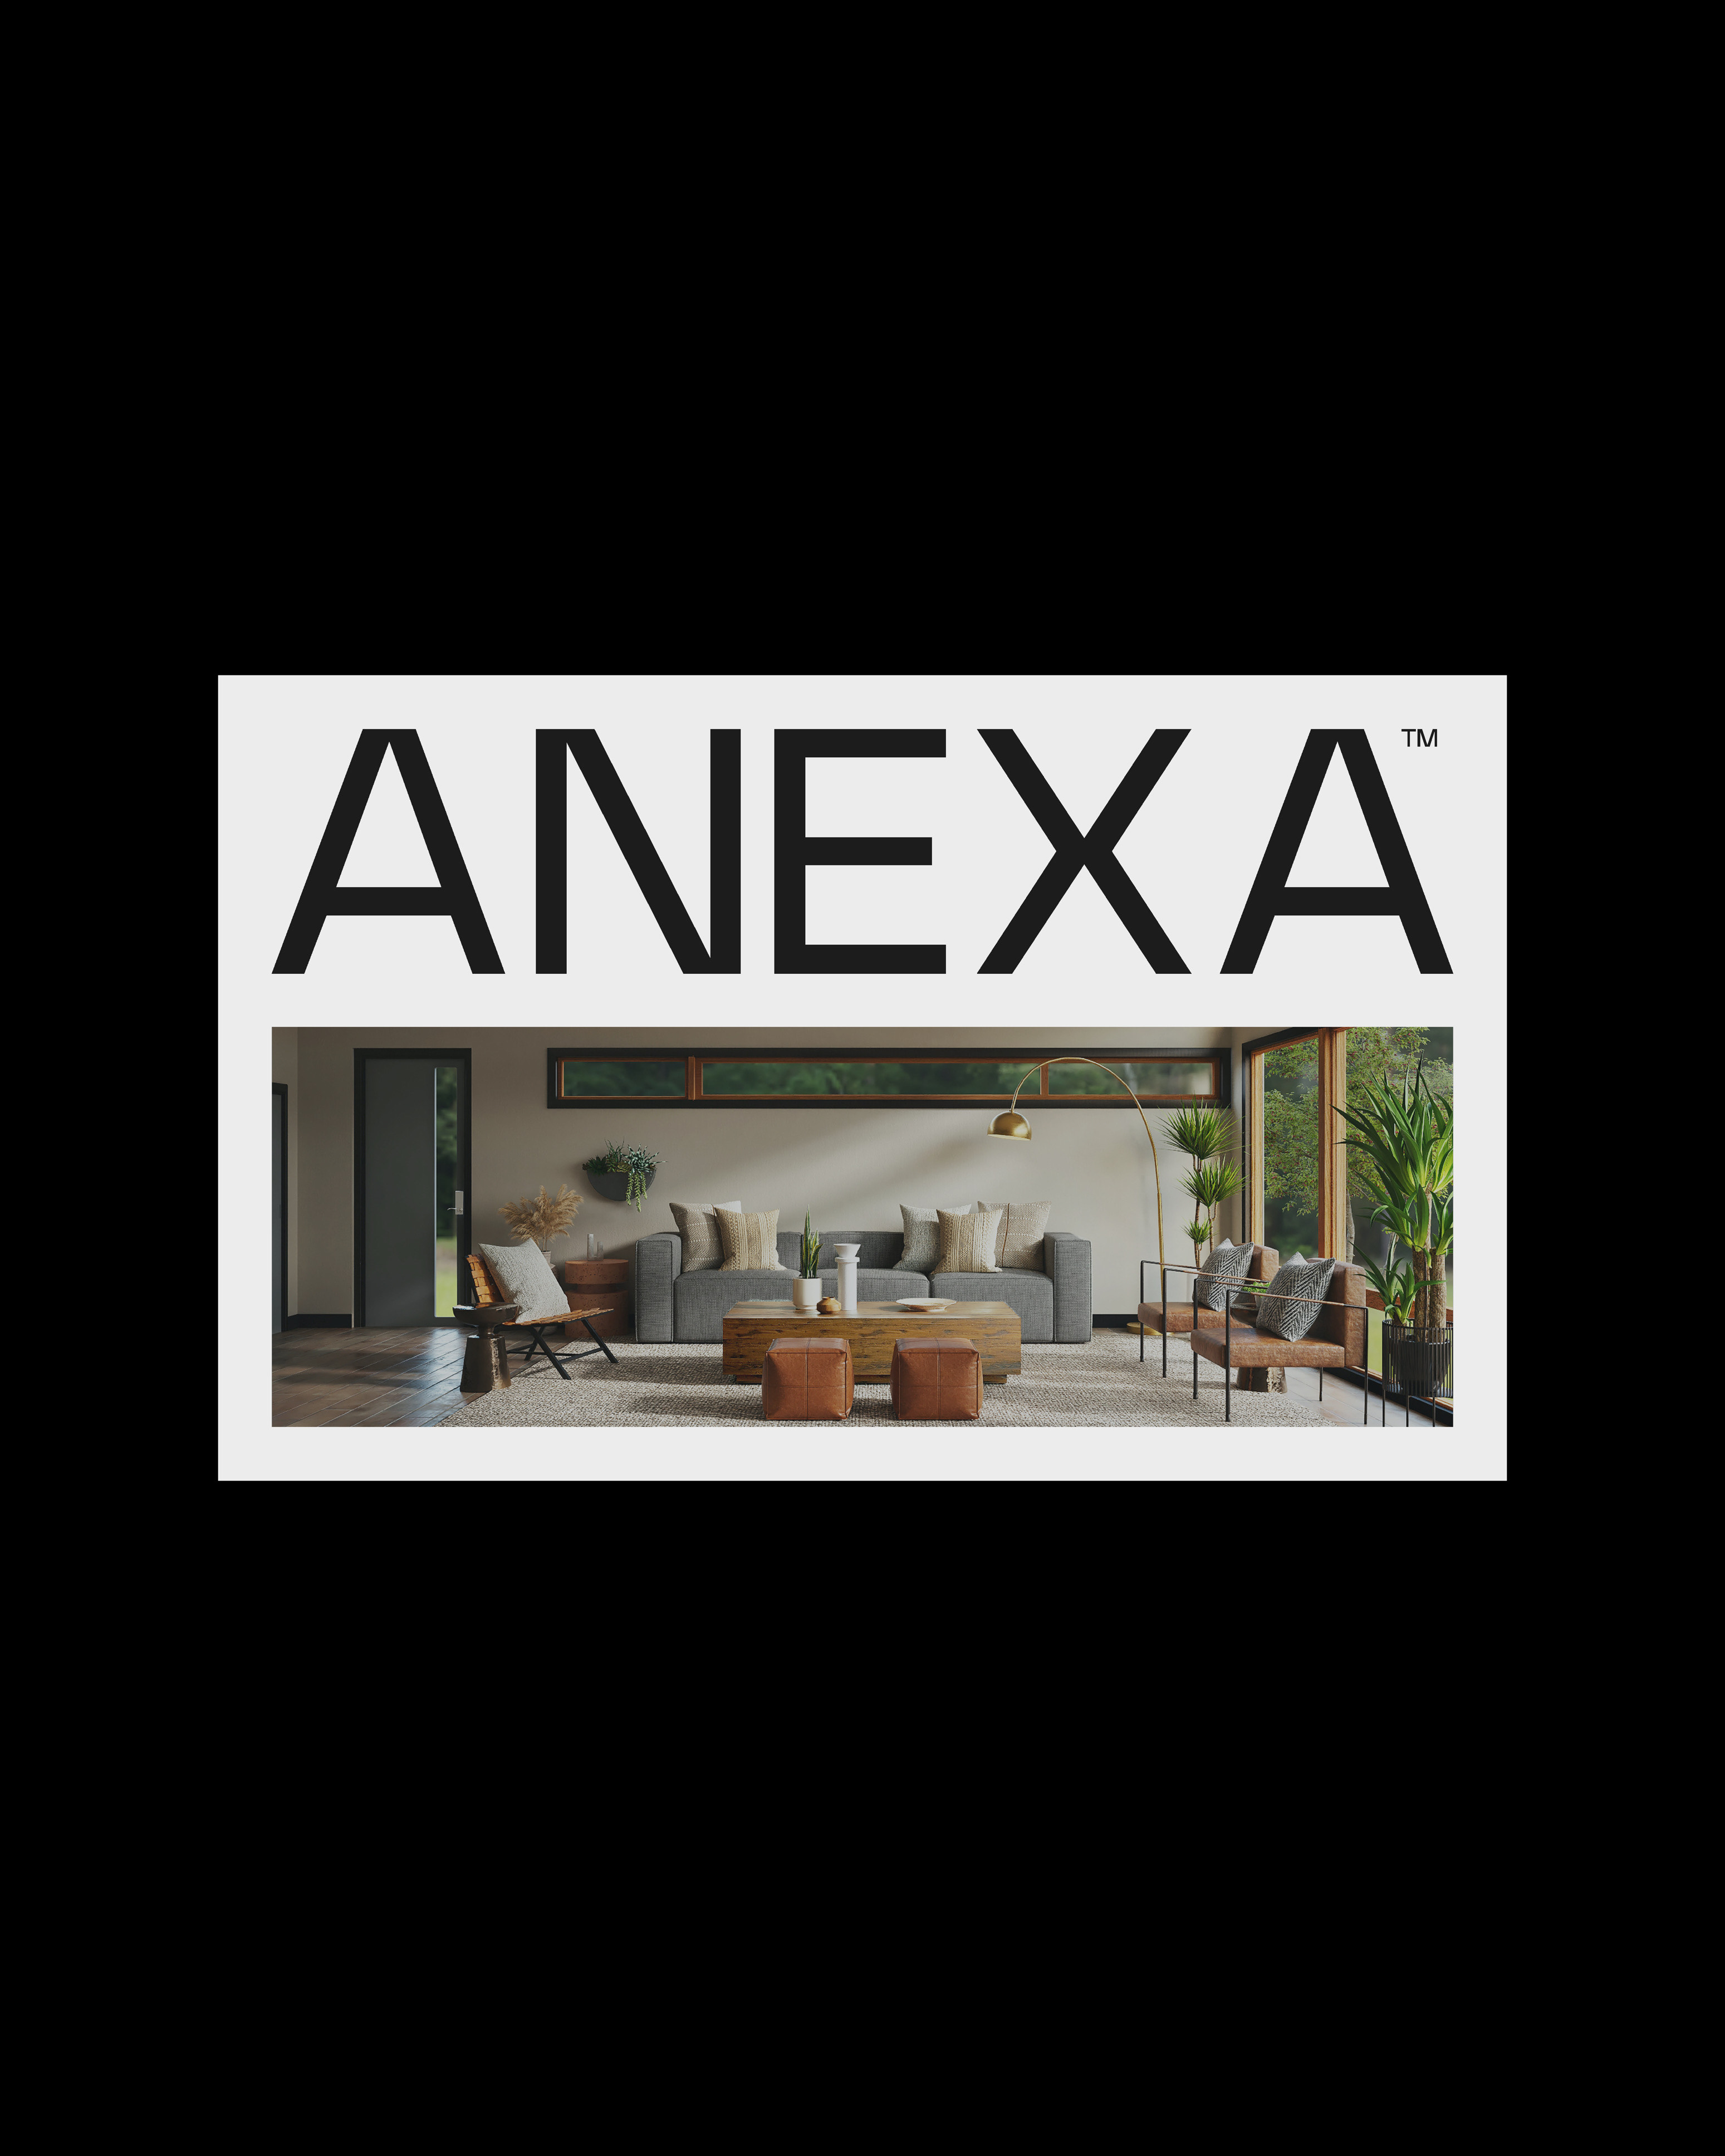 Anexa’s Visual Identity